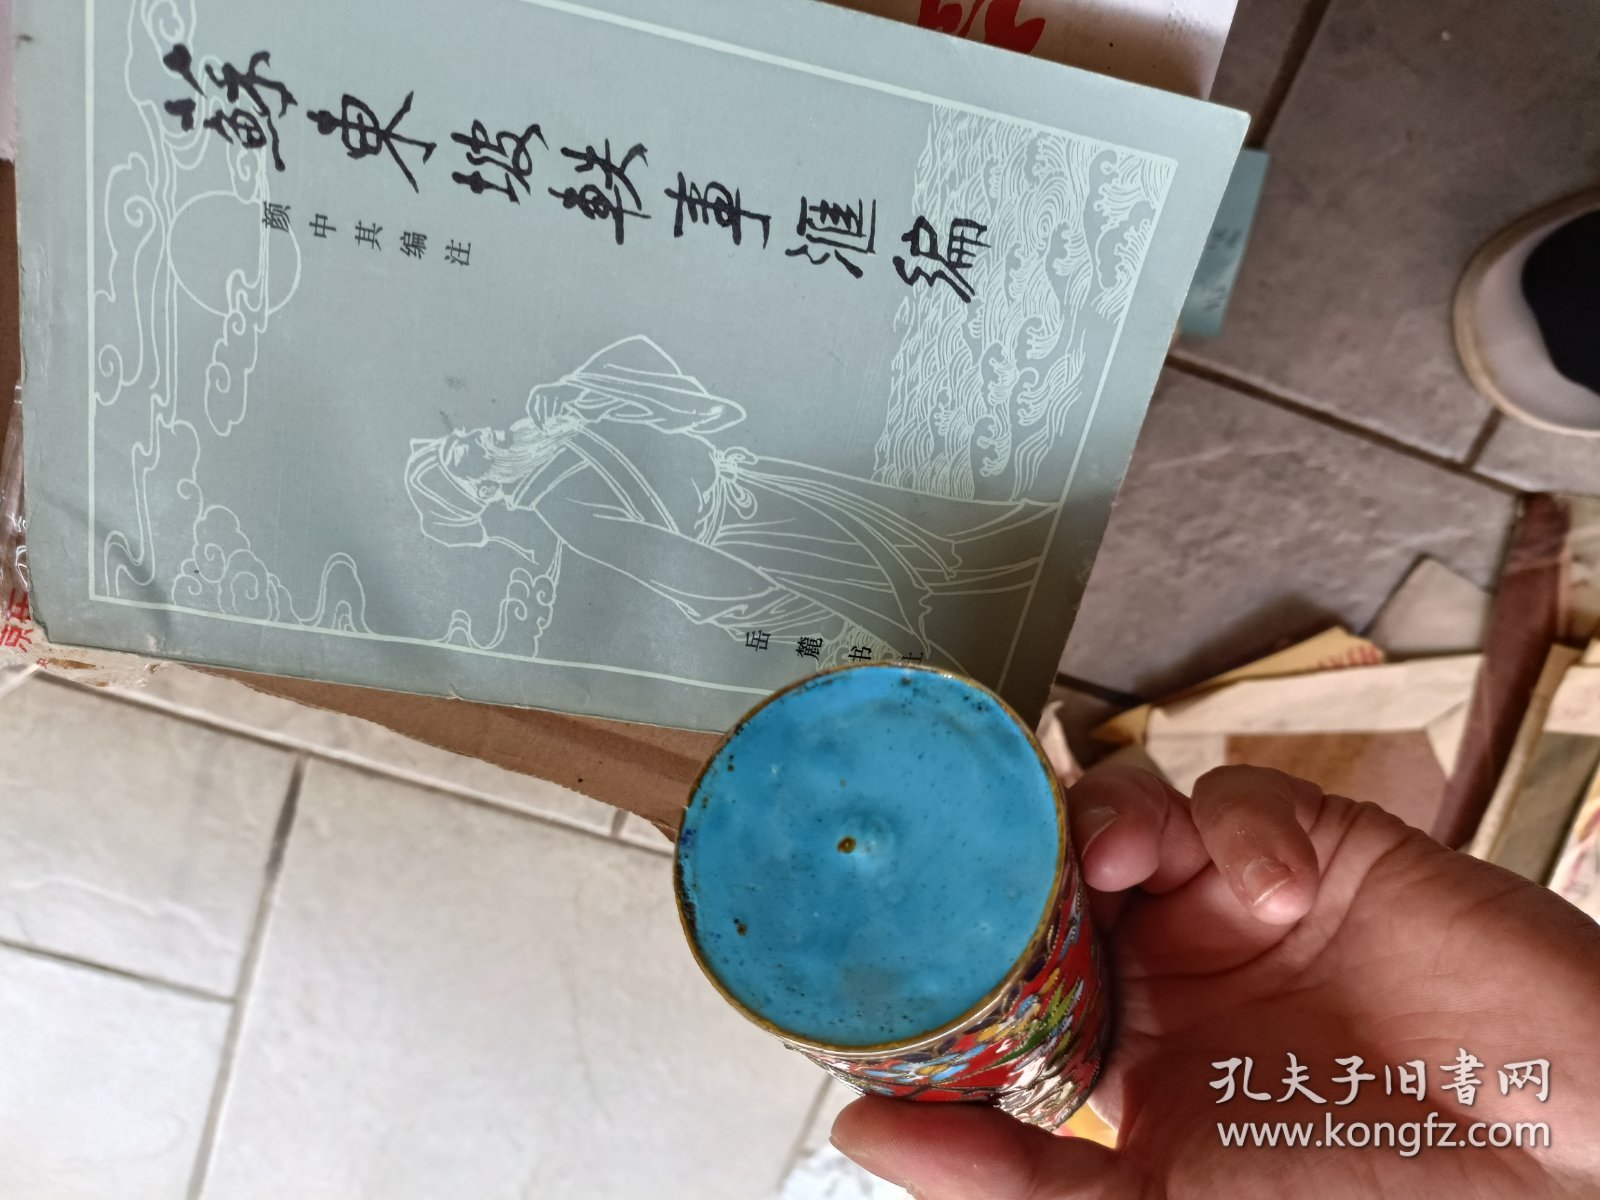 使用了30多年的景泰蓝大号老笔筒，品相好，实物拍摄品相如图，尺寸以实物为准，请务必看清楚再下单。老北京珐琅厂。